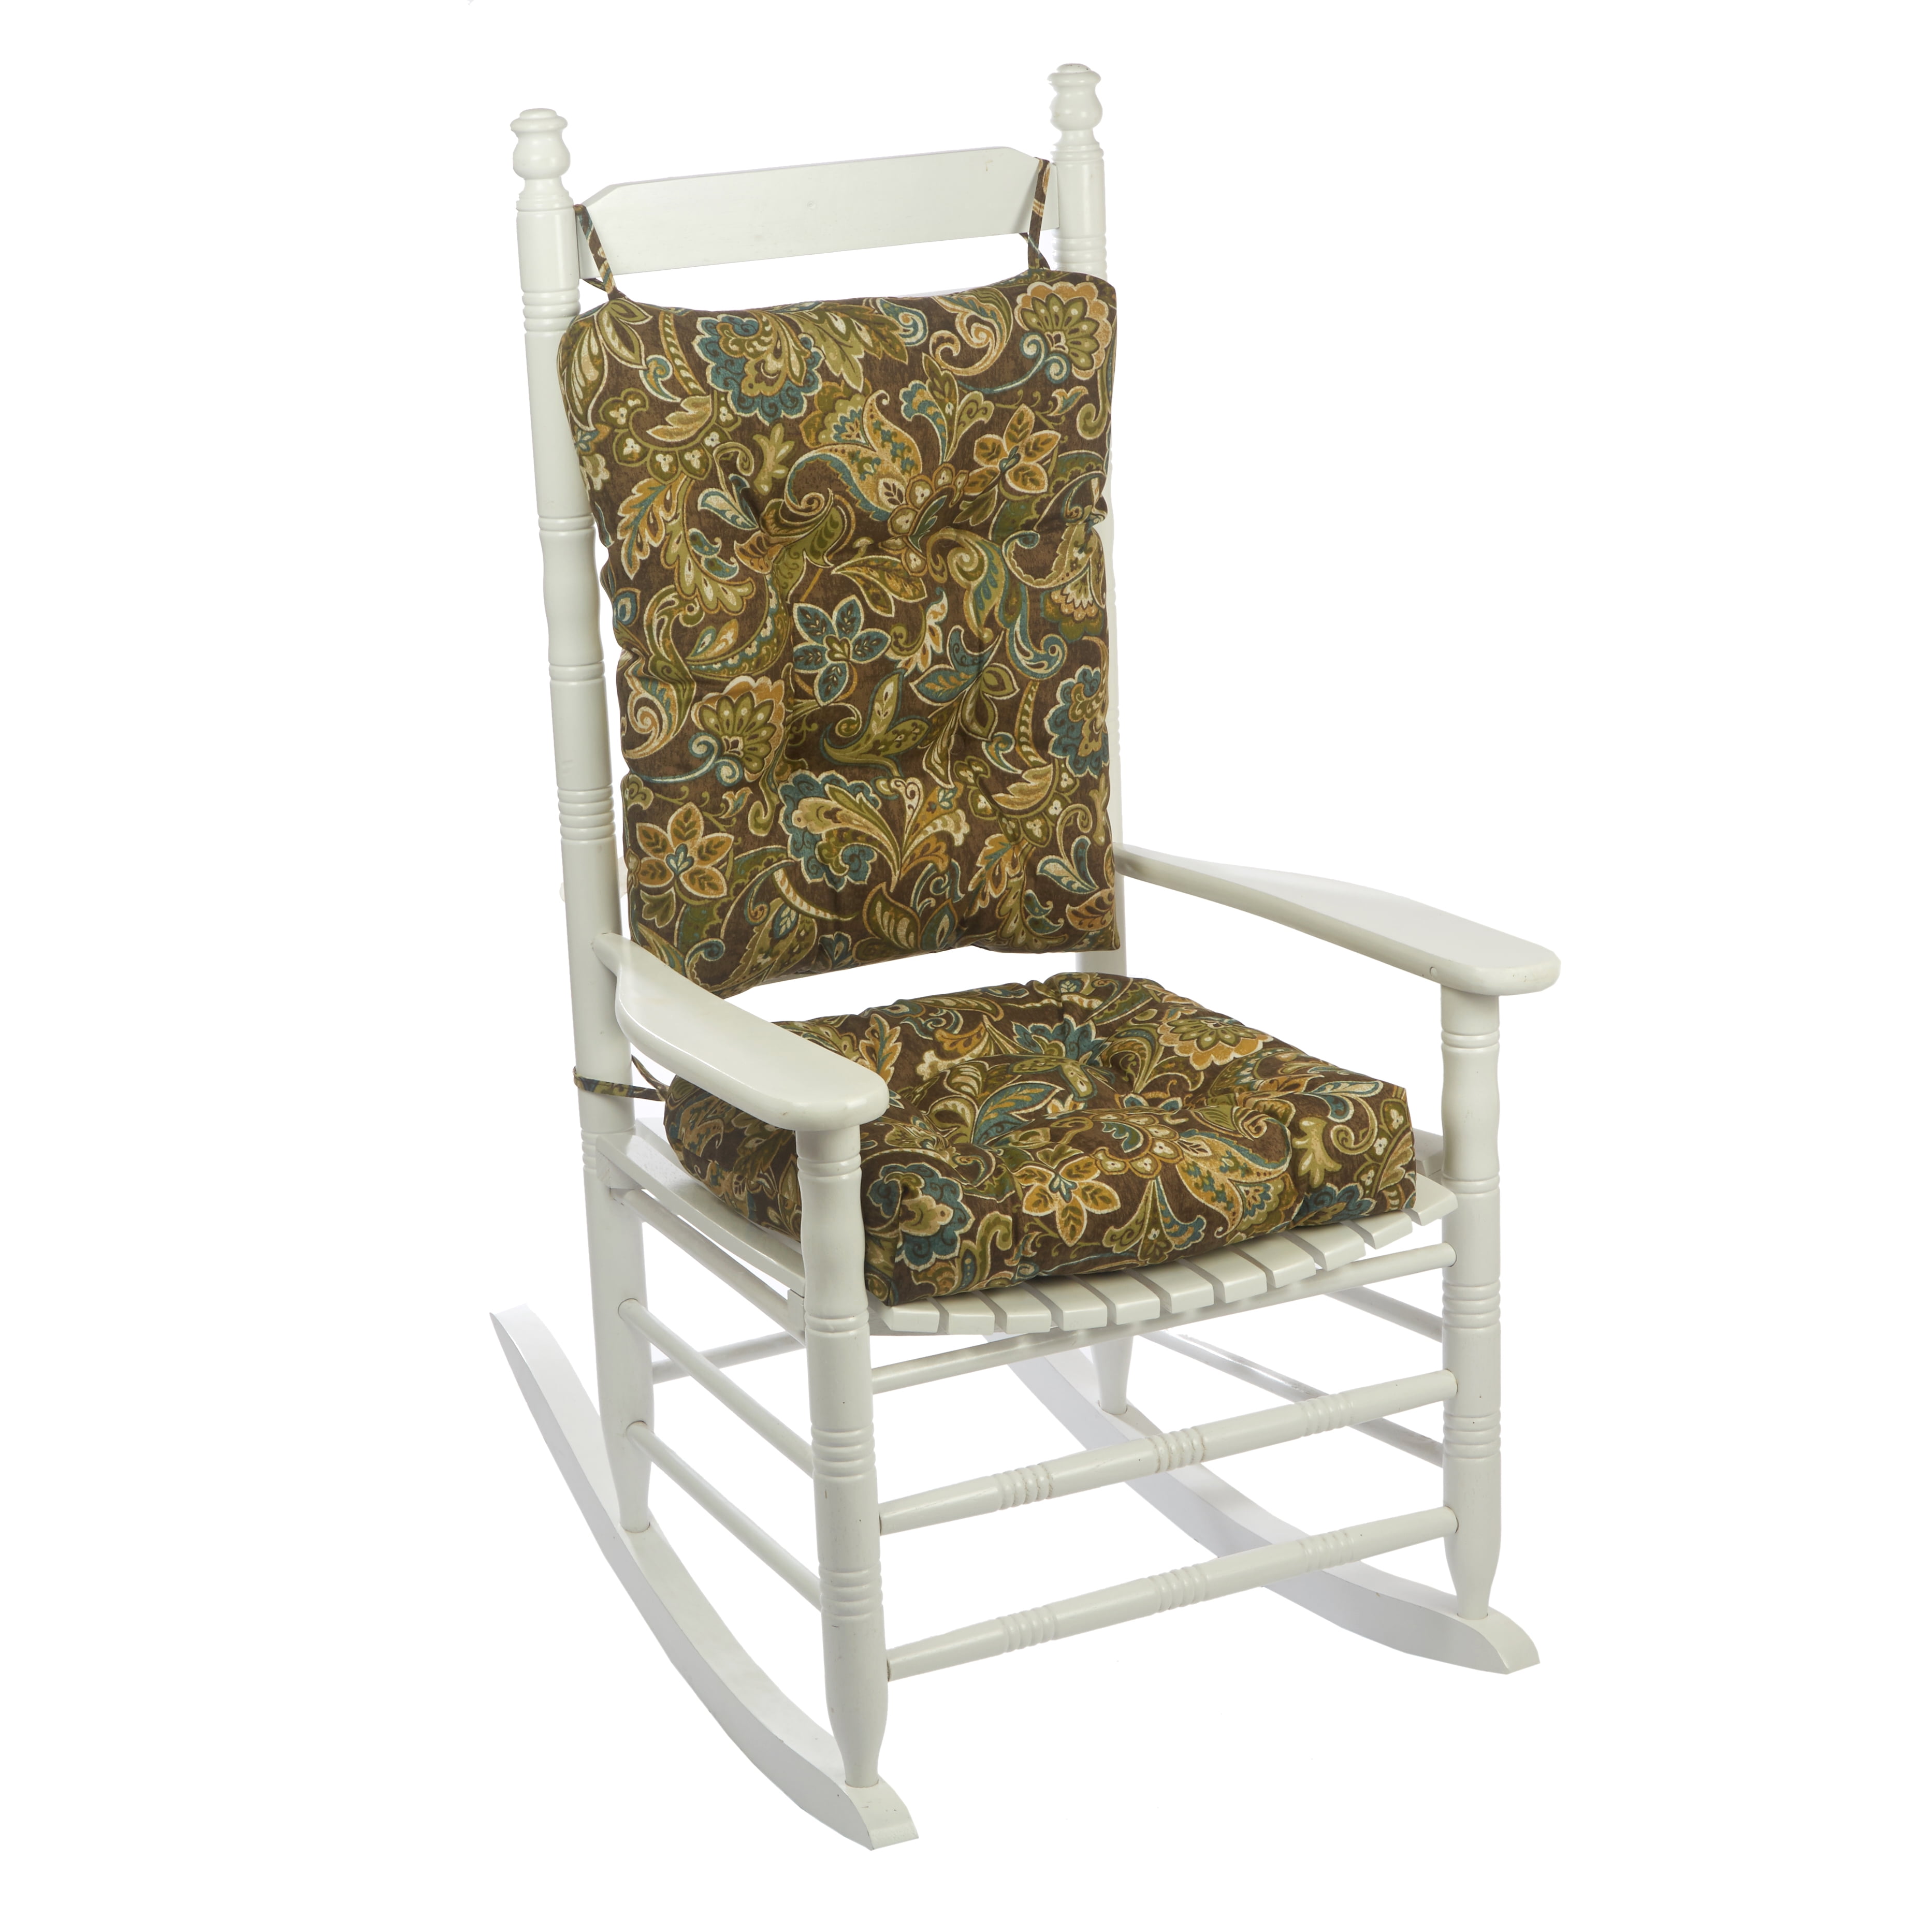 Fl Rocking Chair Cushion Set, Cushions For Porch Rocking Chairs